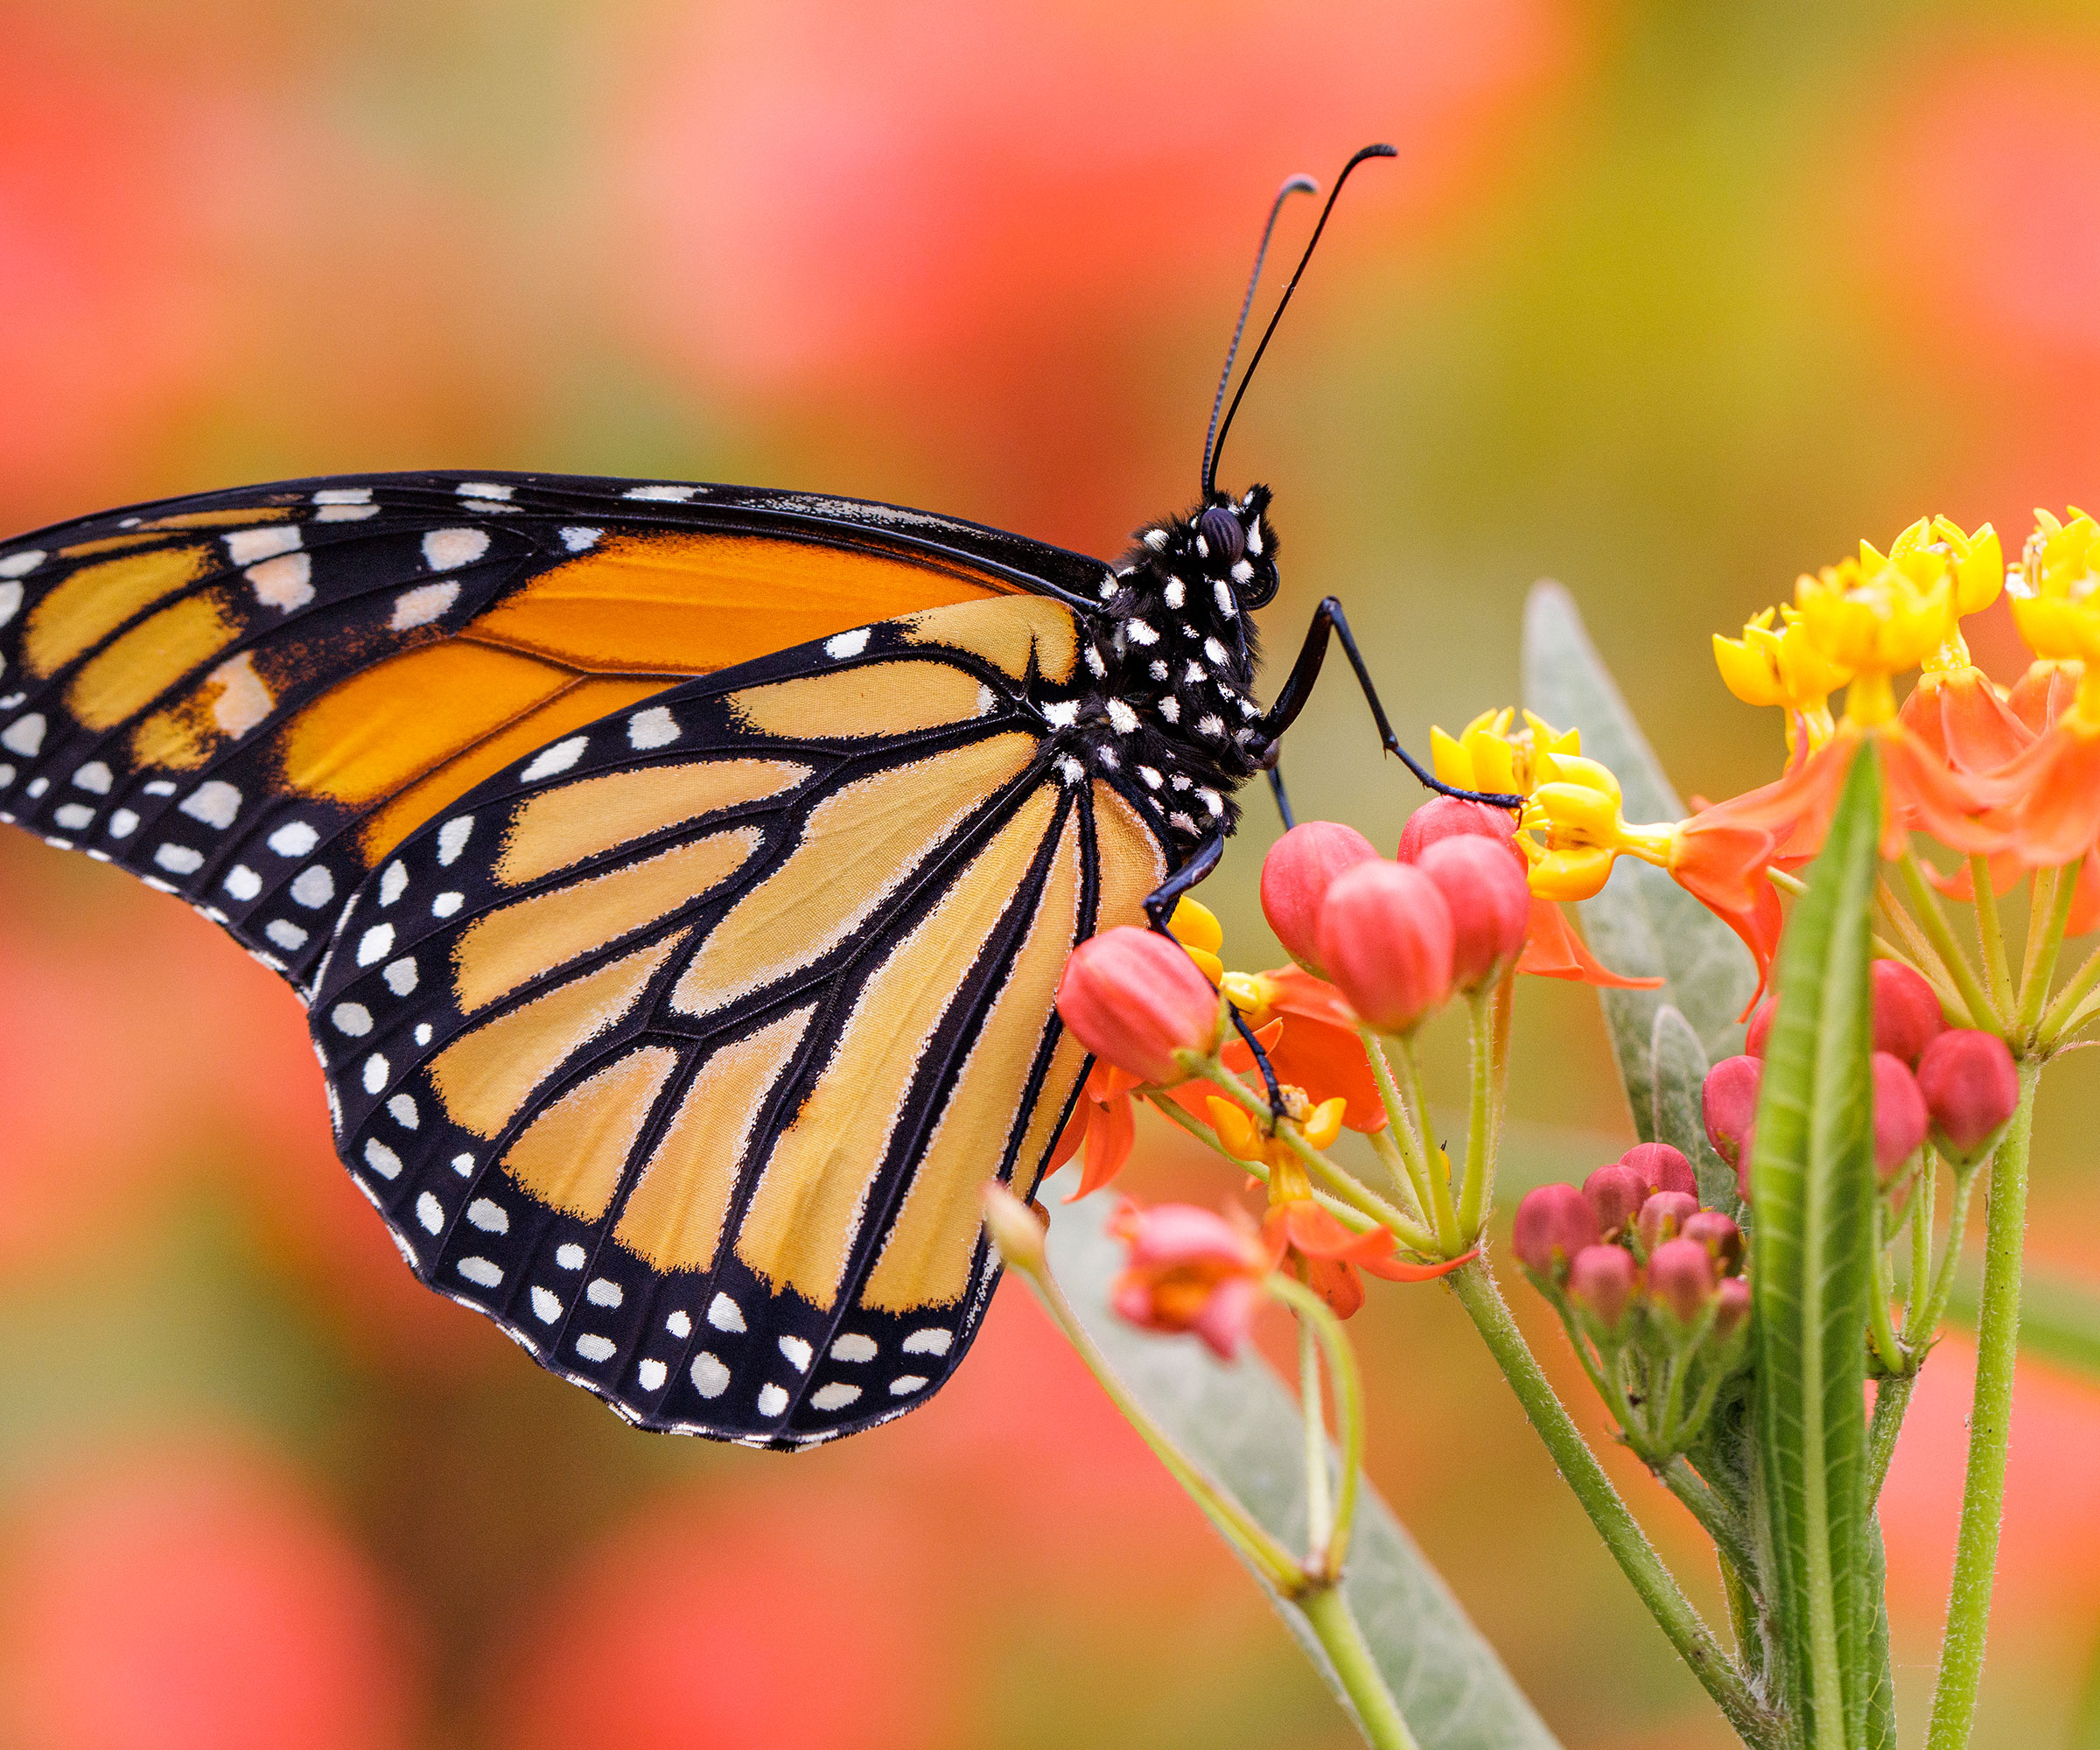 monarch butterfly feeding on milkweed flower